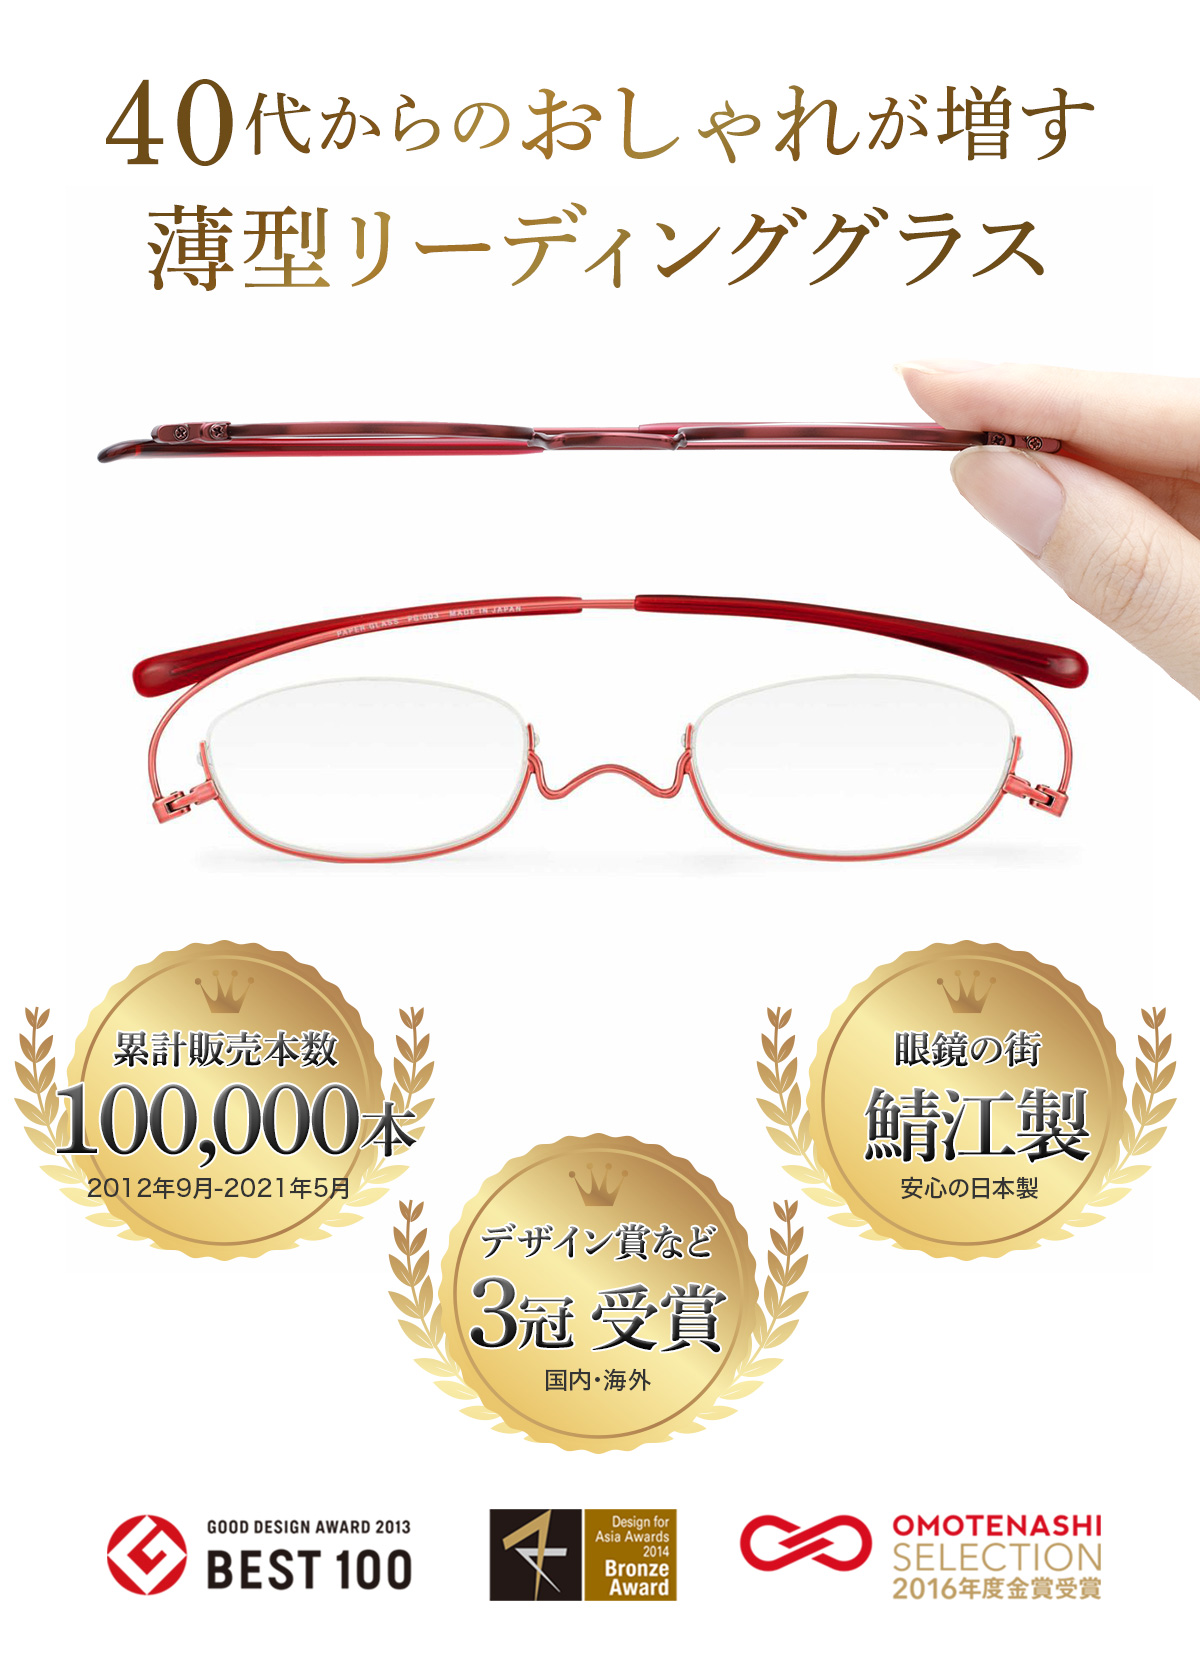 老眼鏡 リーディンググラス シニアグラス ペーパーグラス 安心の実績 受賞歴 メディアで紹介されました！